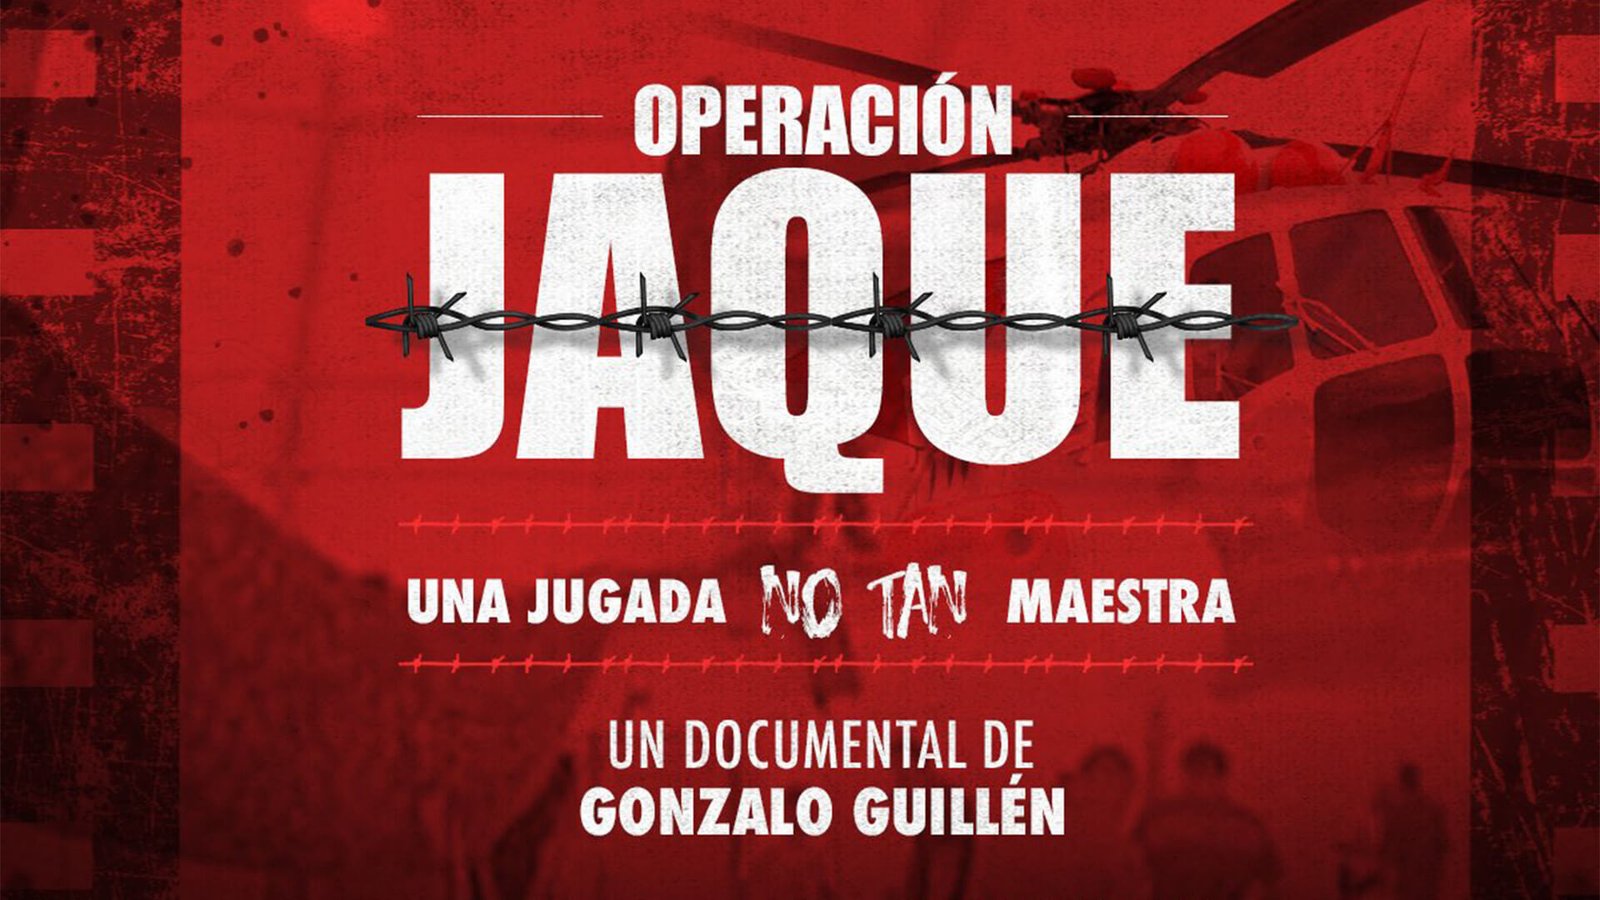 ¿Nos dijeron toda la verdad de la Operación Jaque? Este documental pone a prueba la versión oficial